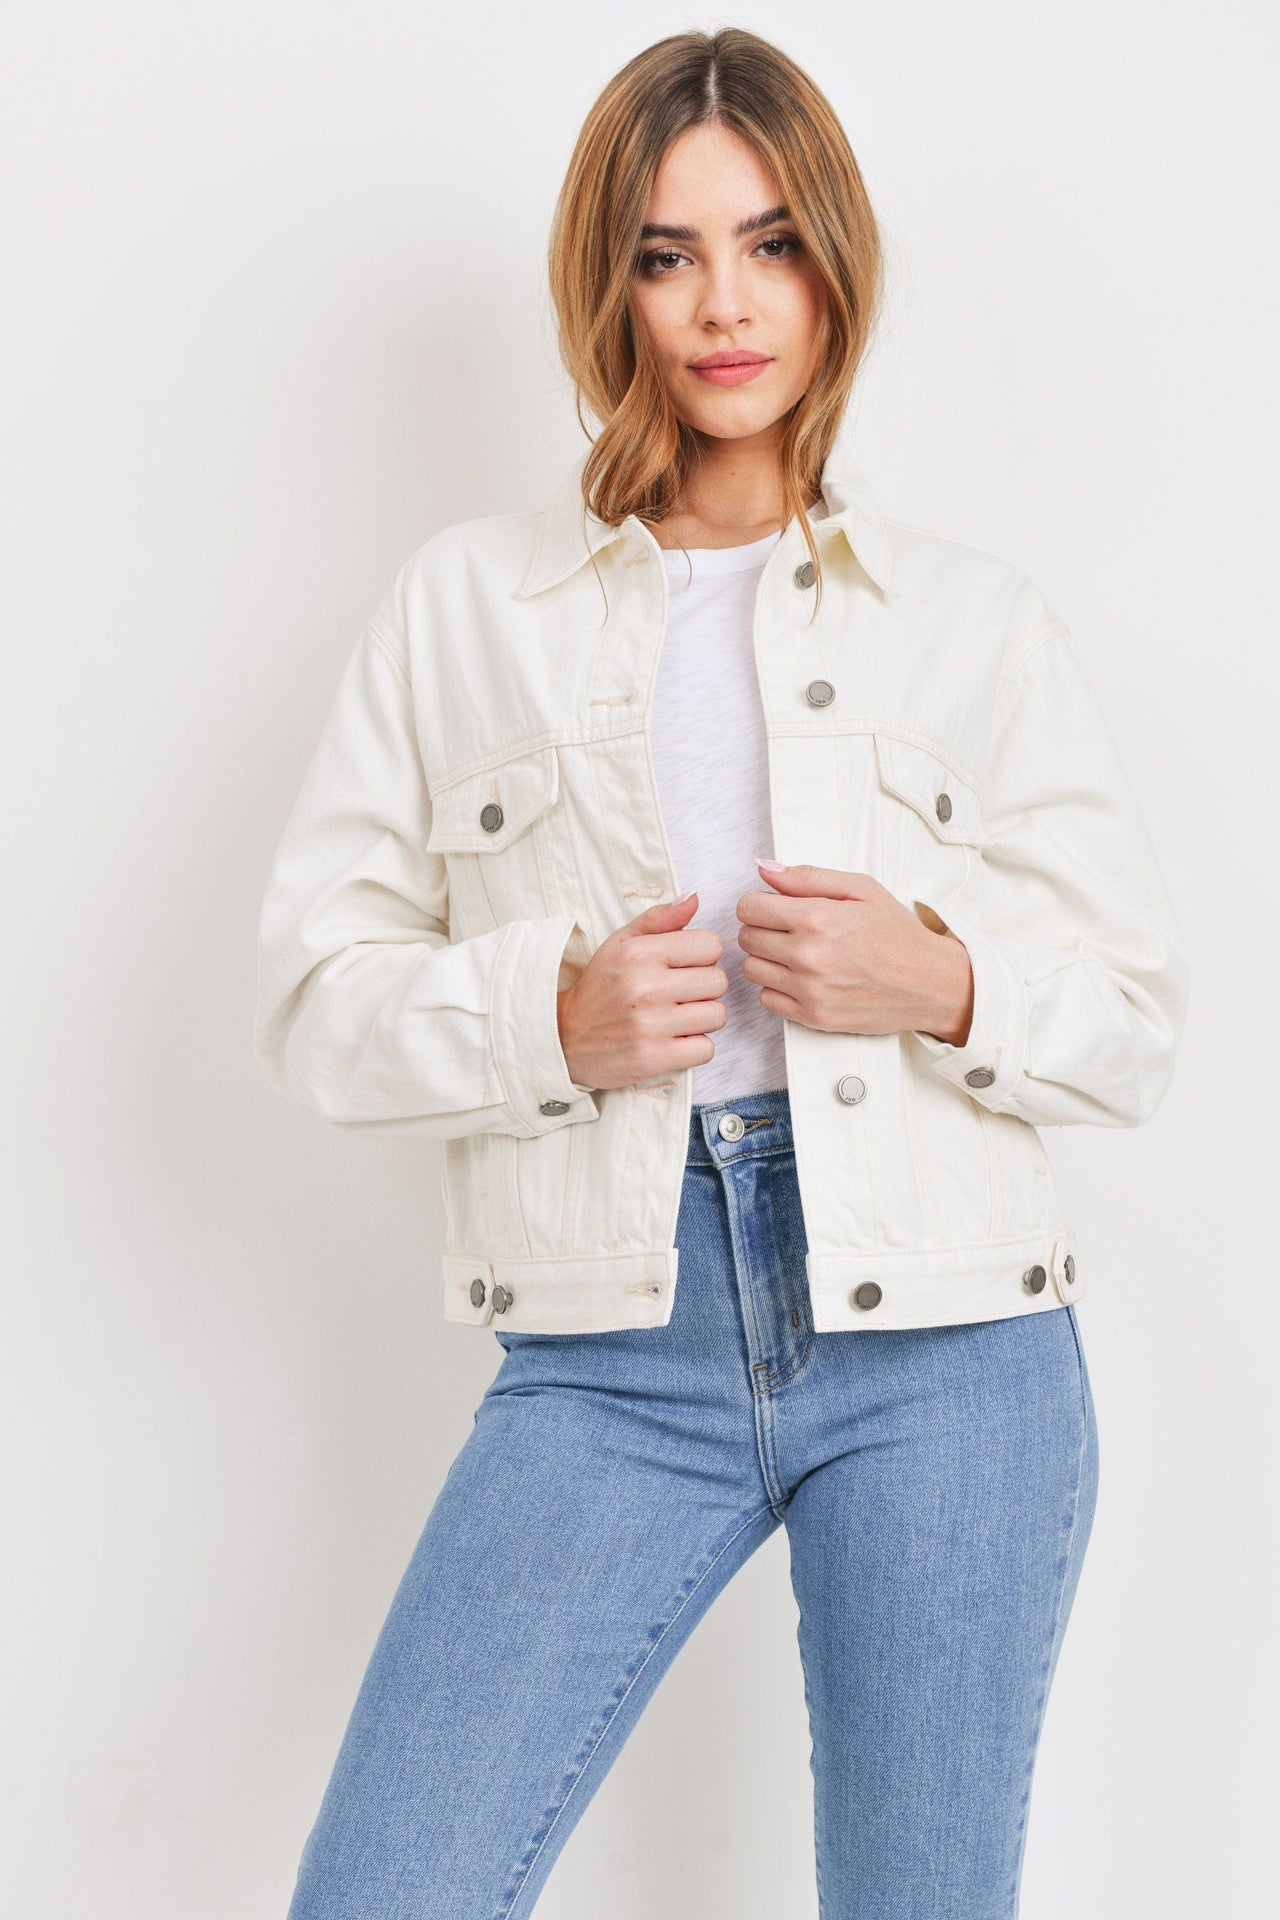 Sold Out Mint Velvet Off White denim jacket XS | eBay